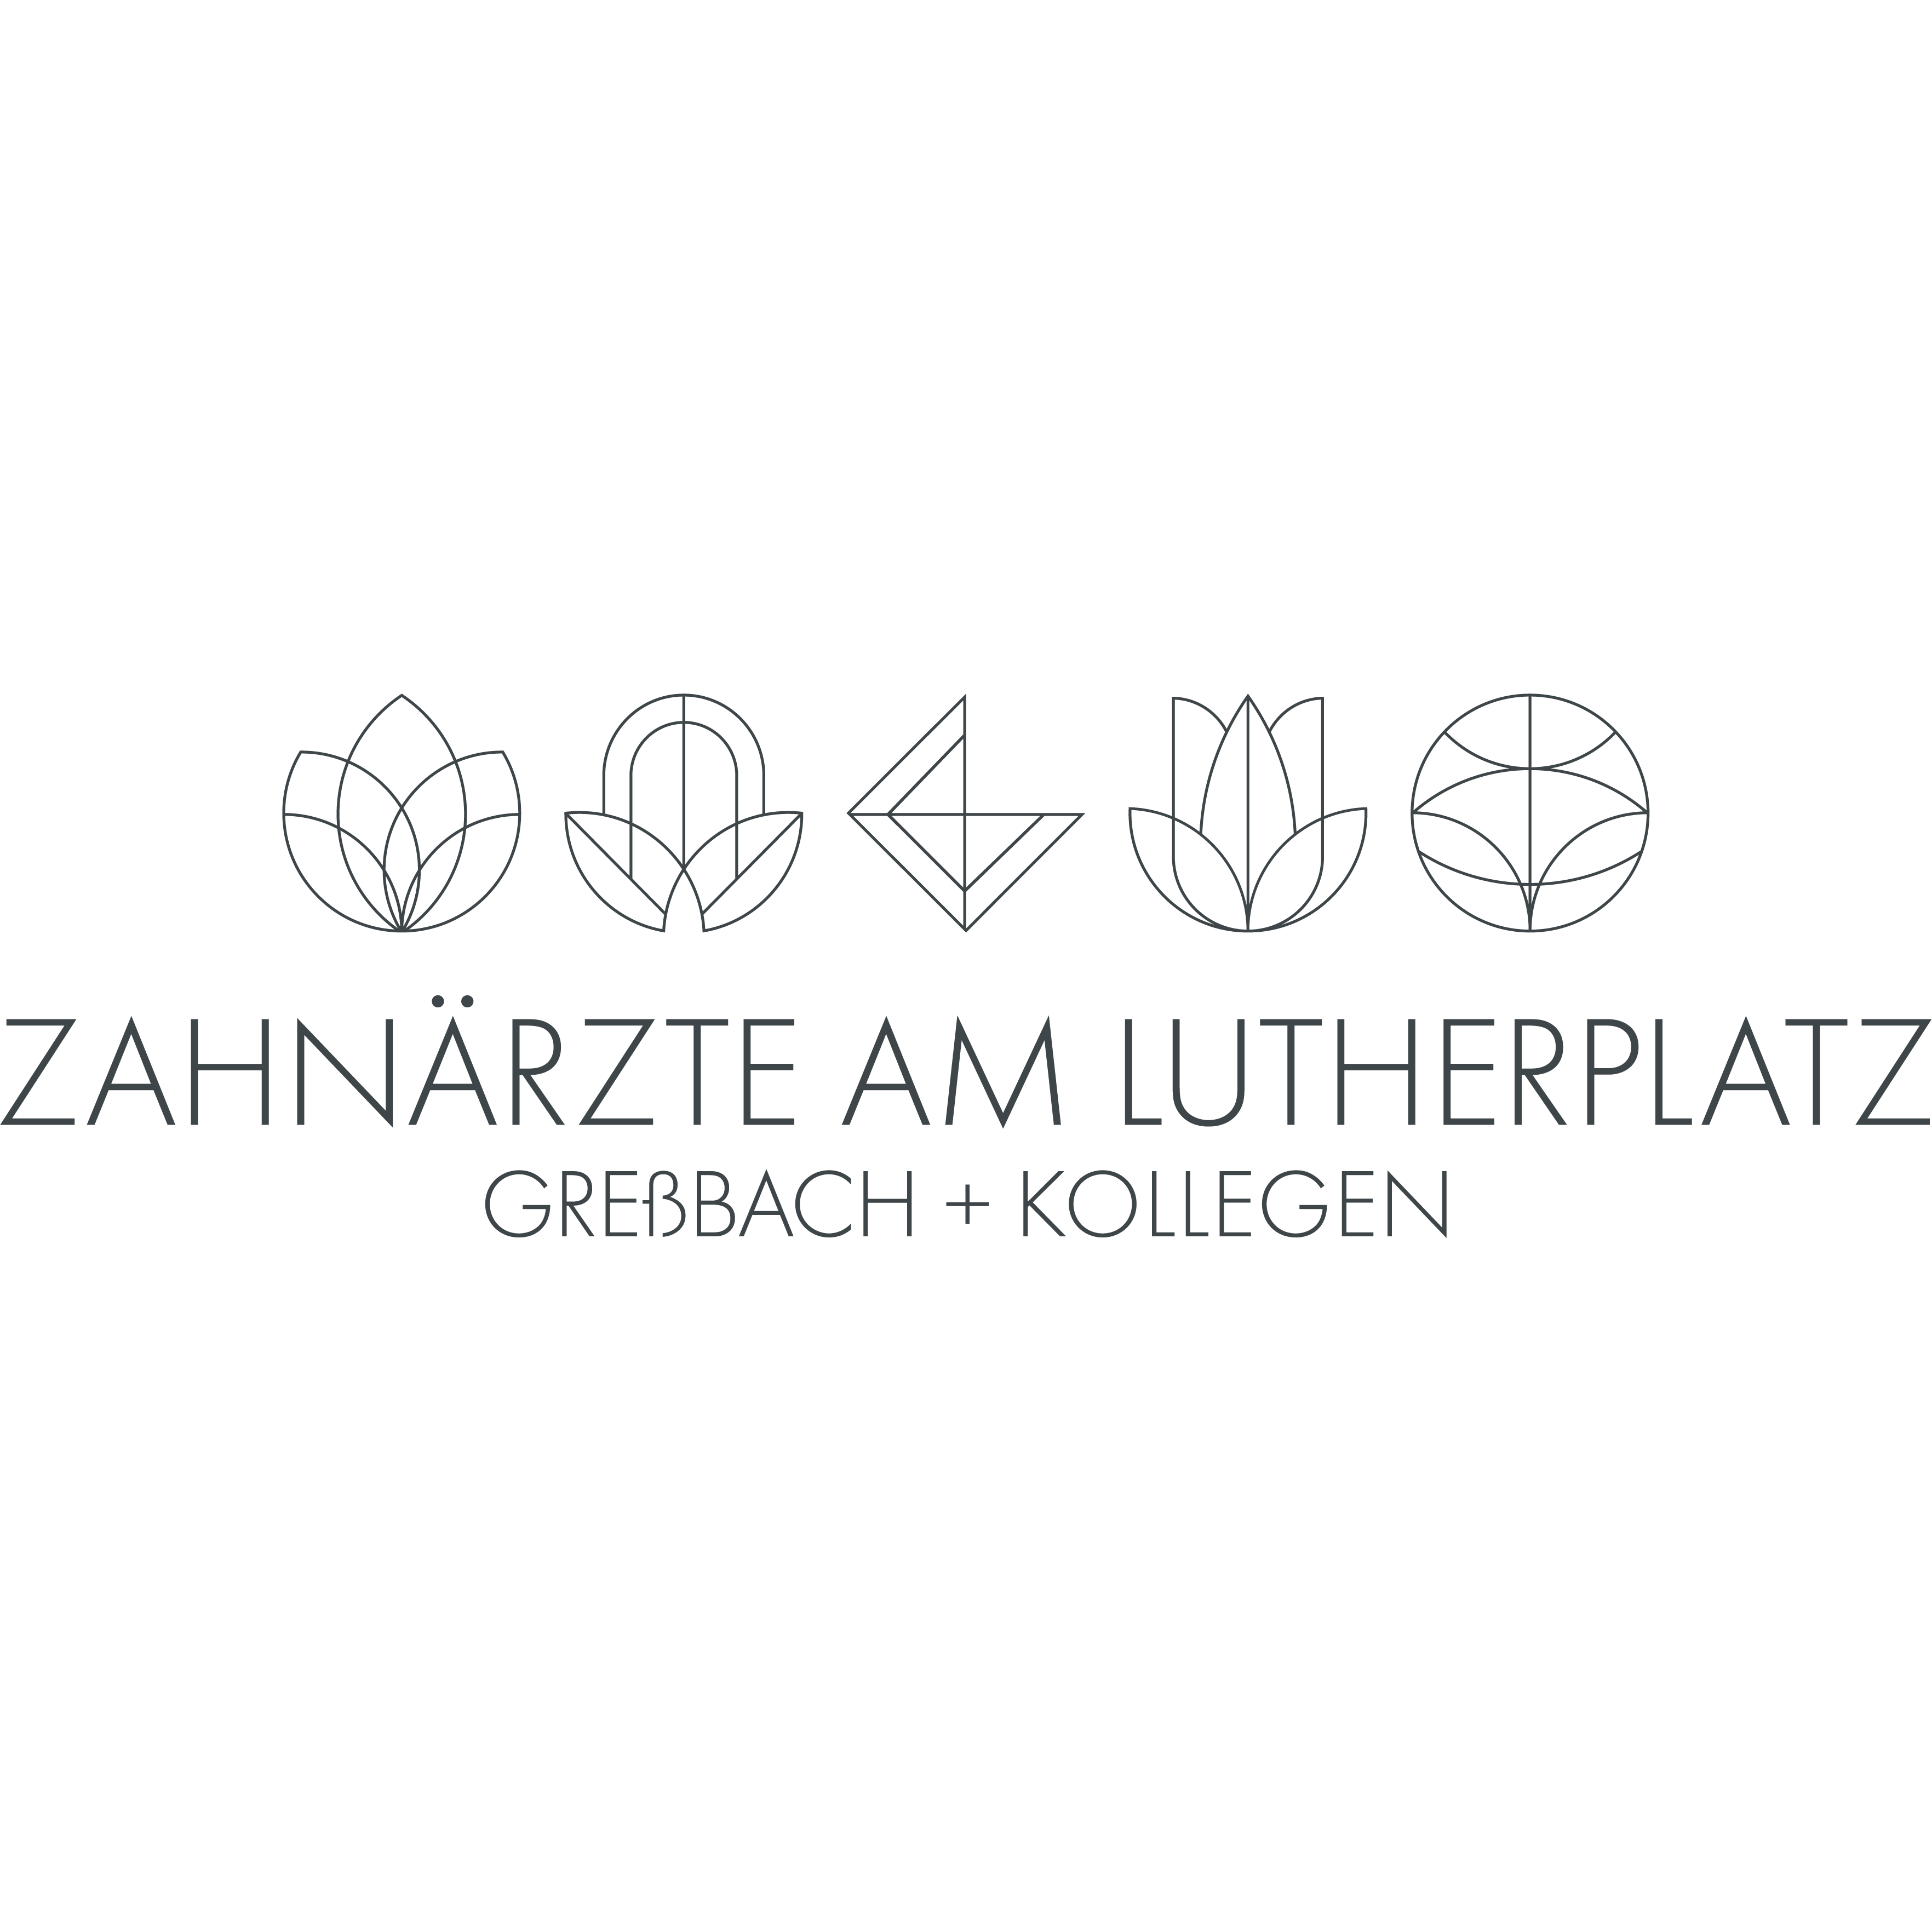 Dr. Greßbach + Kollegen - Zahnärzte am Lutherplatz Langen in Langen in Hessen - Logo